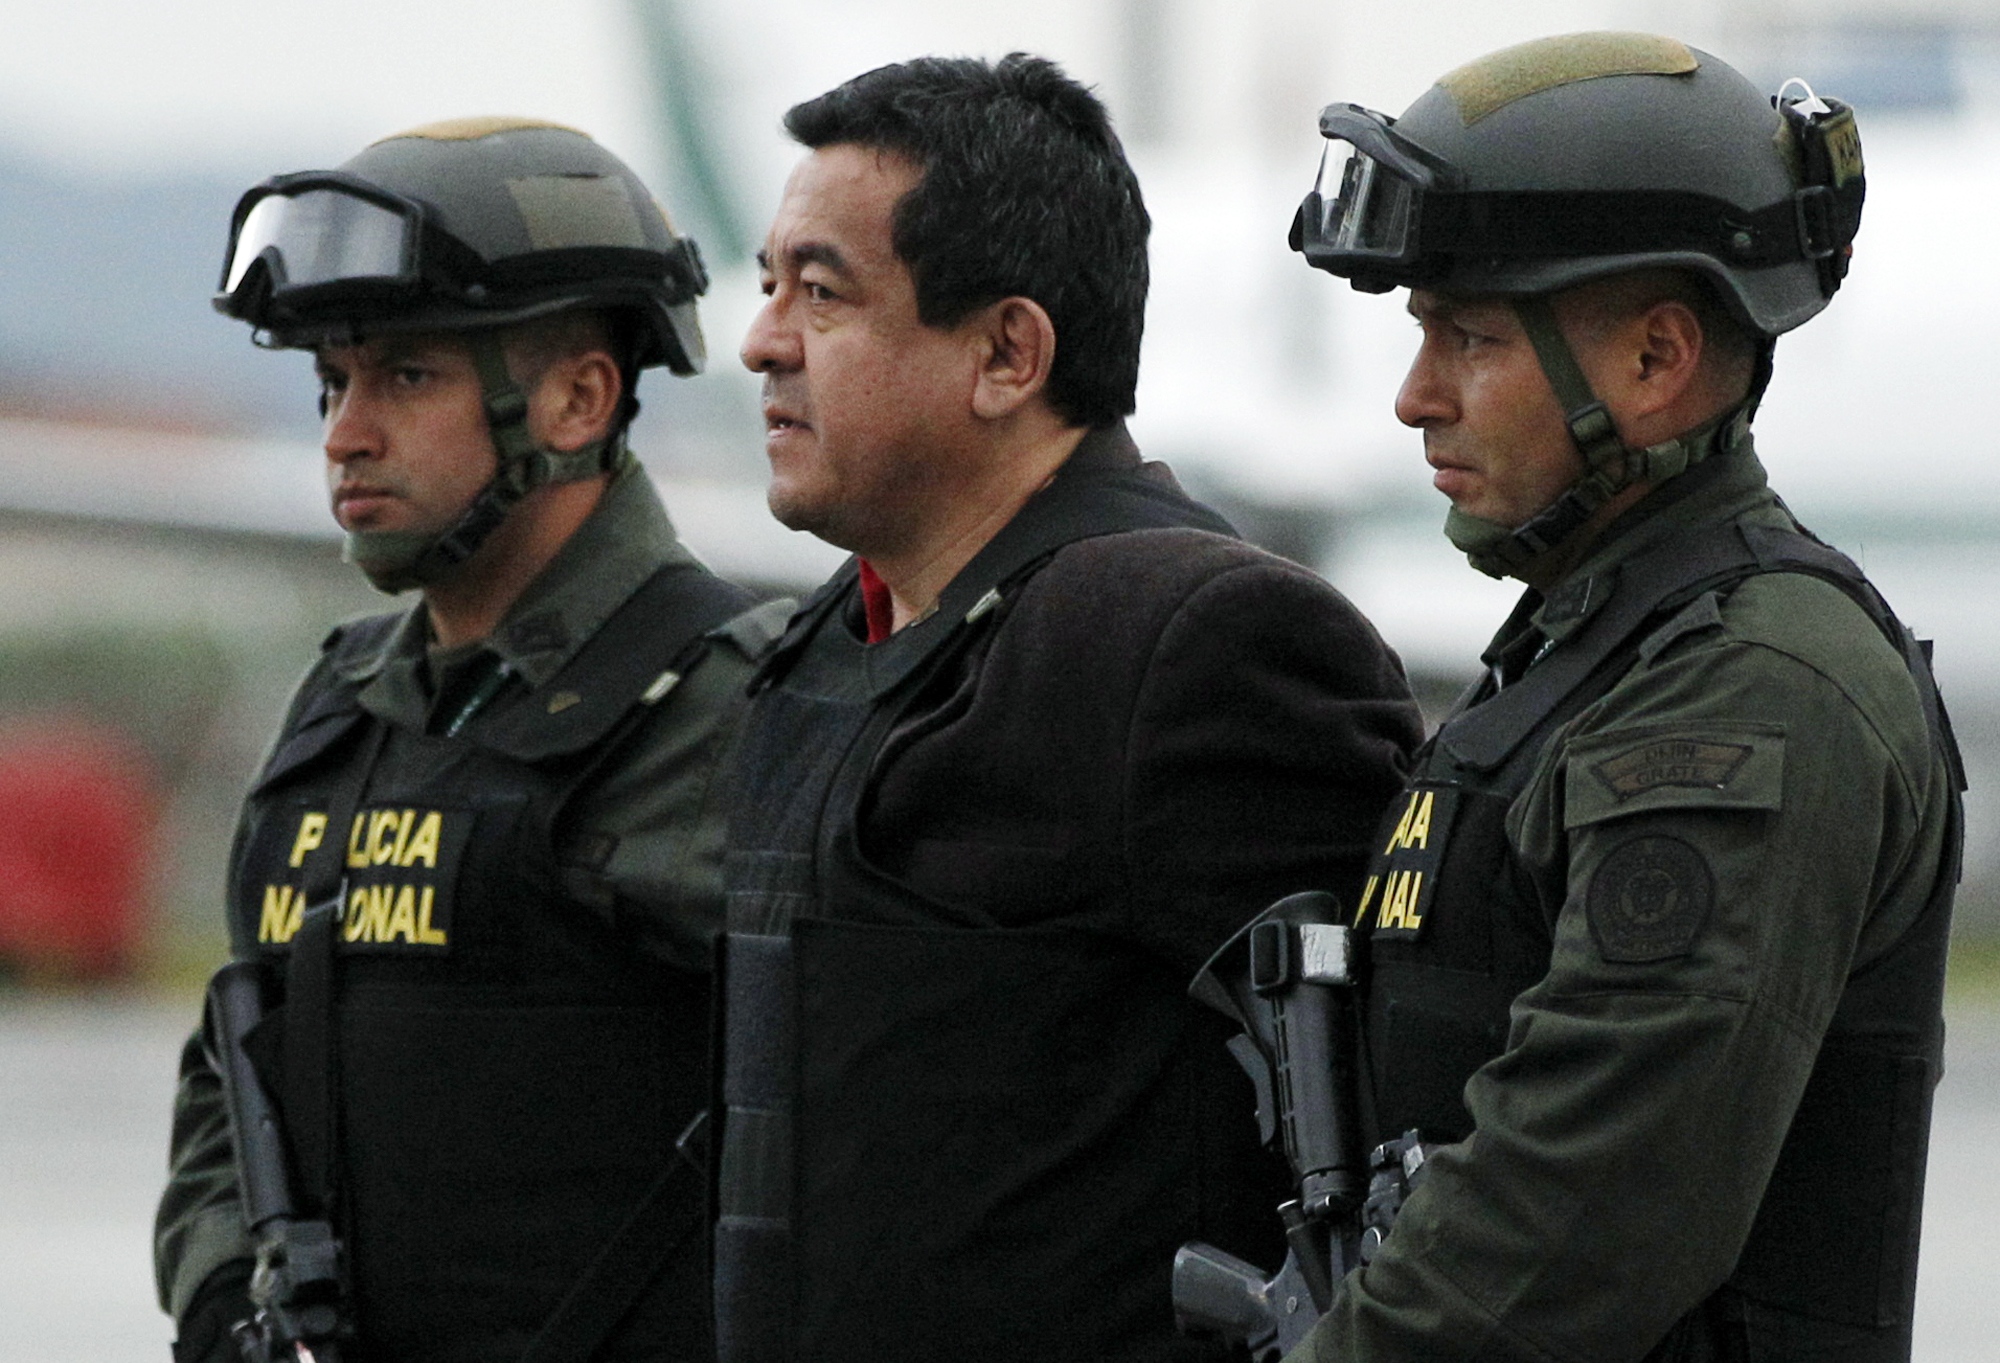 Häktad, Farc, Colombia, terrorist